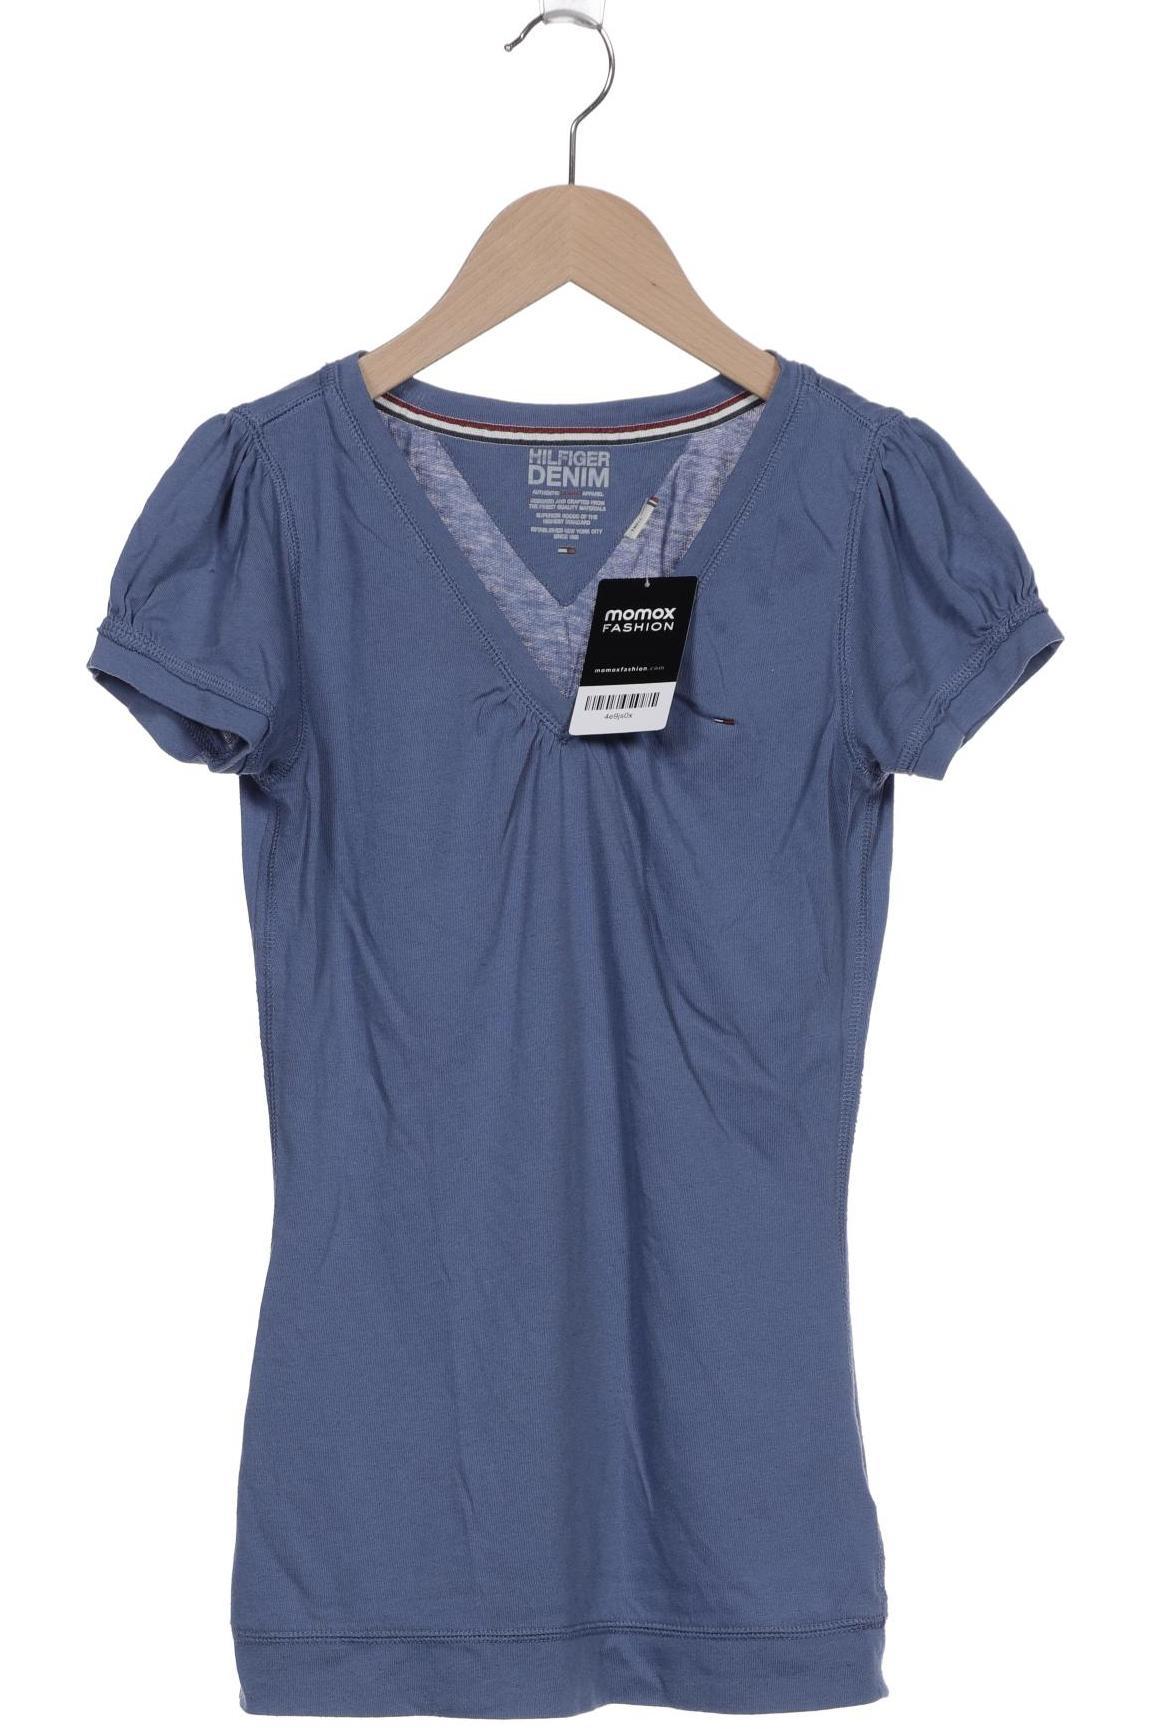 HILFIGER DENIM Damen T-Shirt, blau von Hilfiger Denim